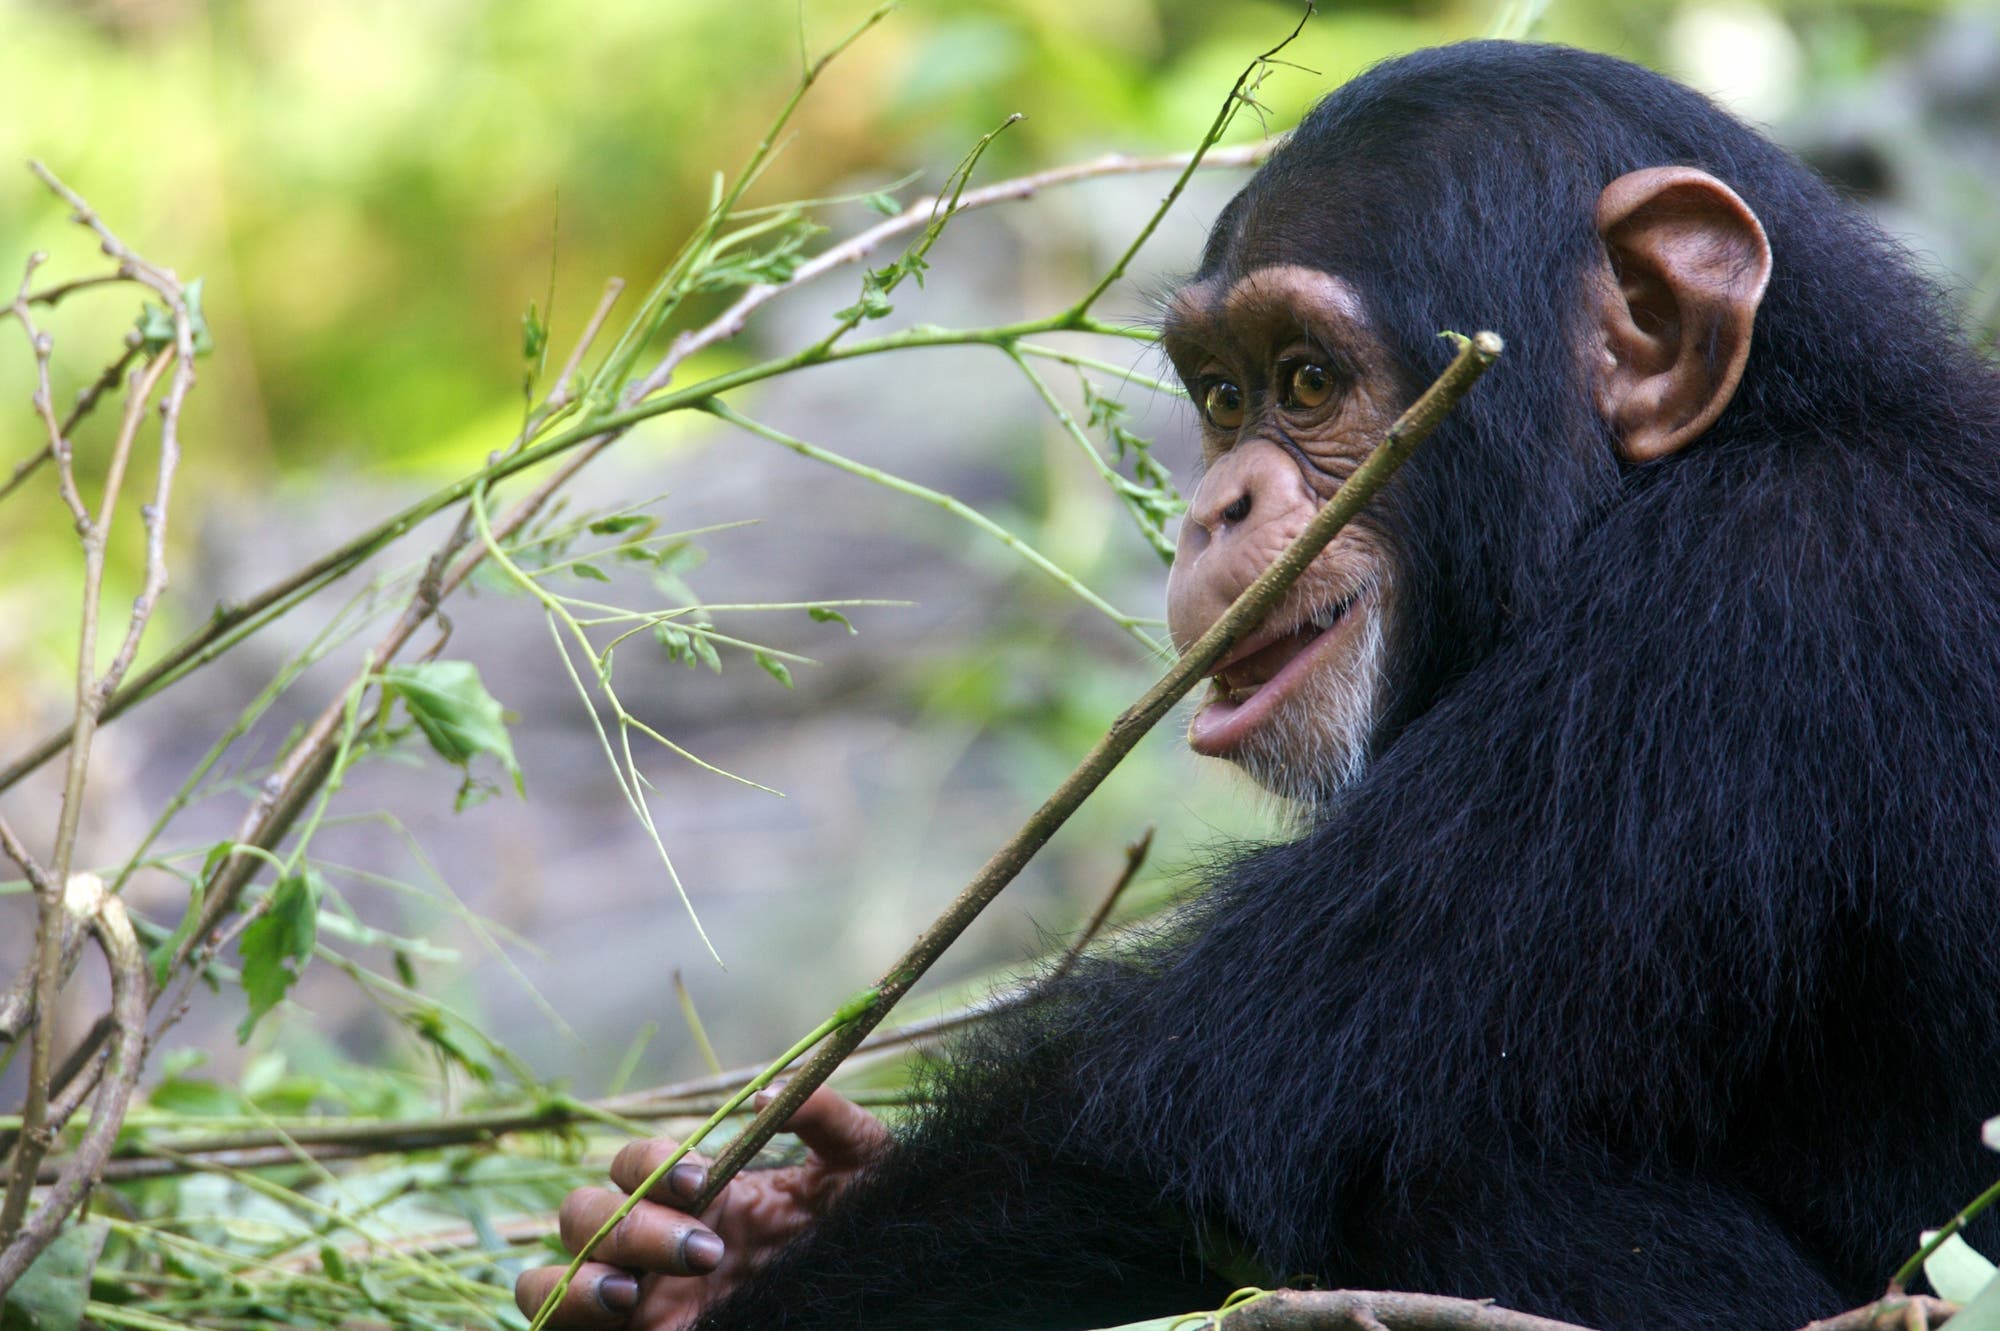 Ein Schimpanse sitzt im Grünen und hält einen Stock in der Hand, an dem er knabbert.